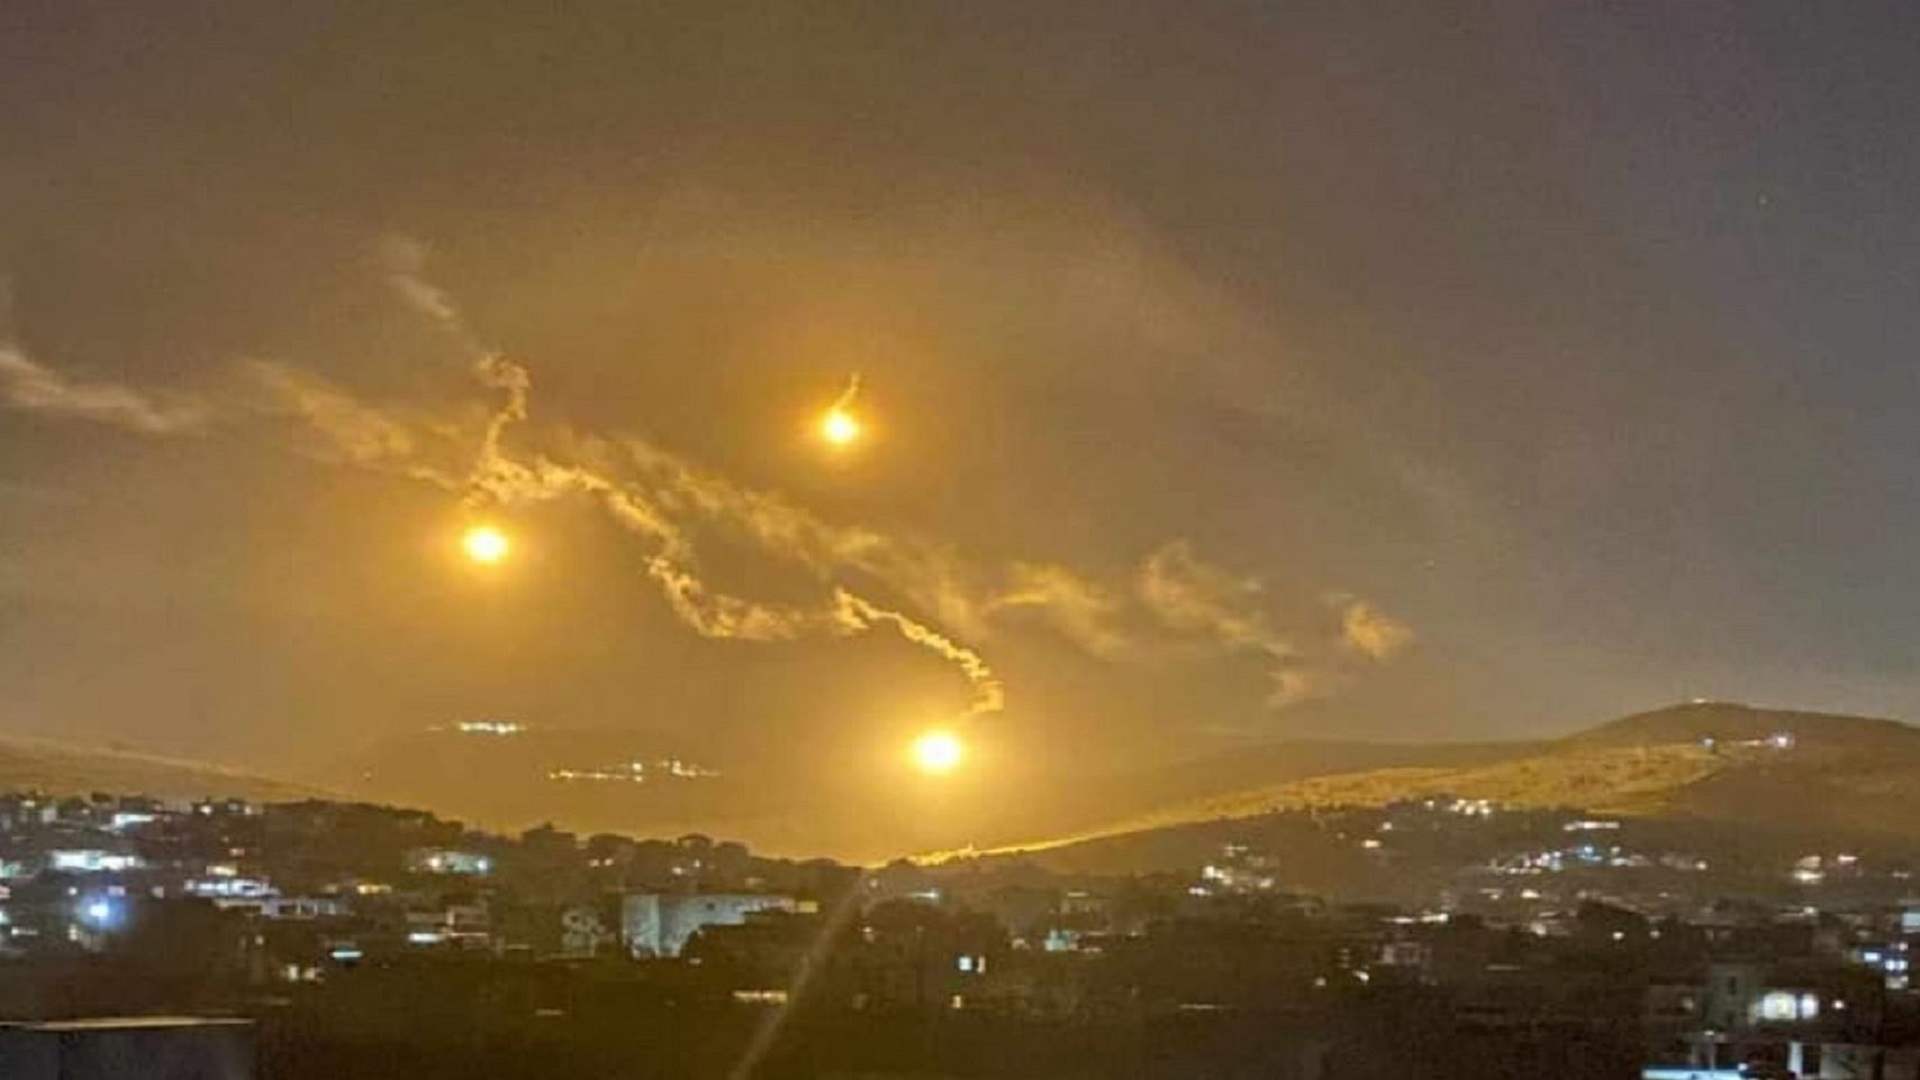 القوات الاسرائيلية أطلقت قبل قليل عددا من القنابل المضيئة فوق منطقة سعسع في خراج بلدة رميش الحدودية وسط تحليق طائرة استطلاع فوق المنطقة